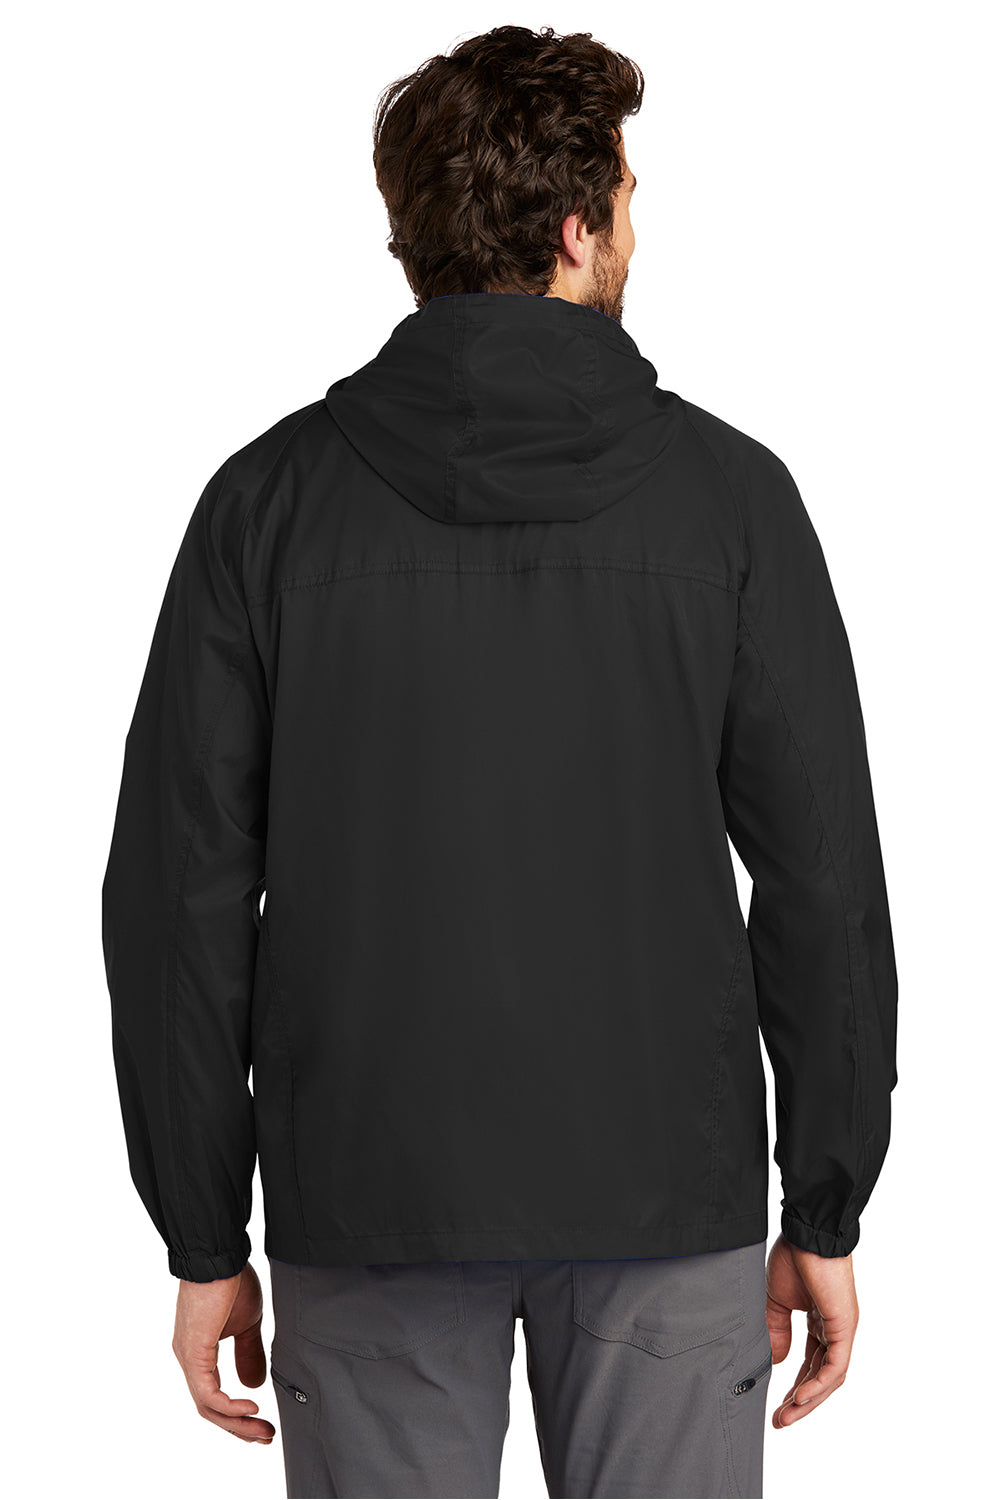 Eddie Bauer EB500 Mens Packable Wind Resistant Full Zip Hooded Jacket Black Model Back